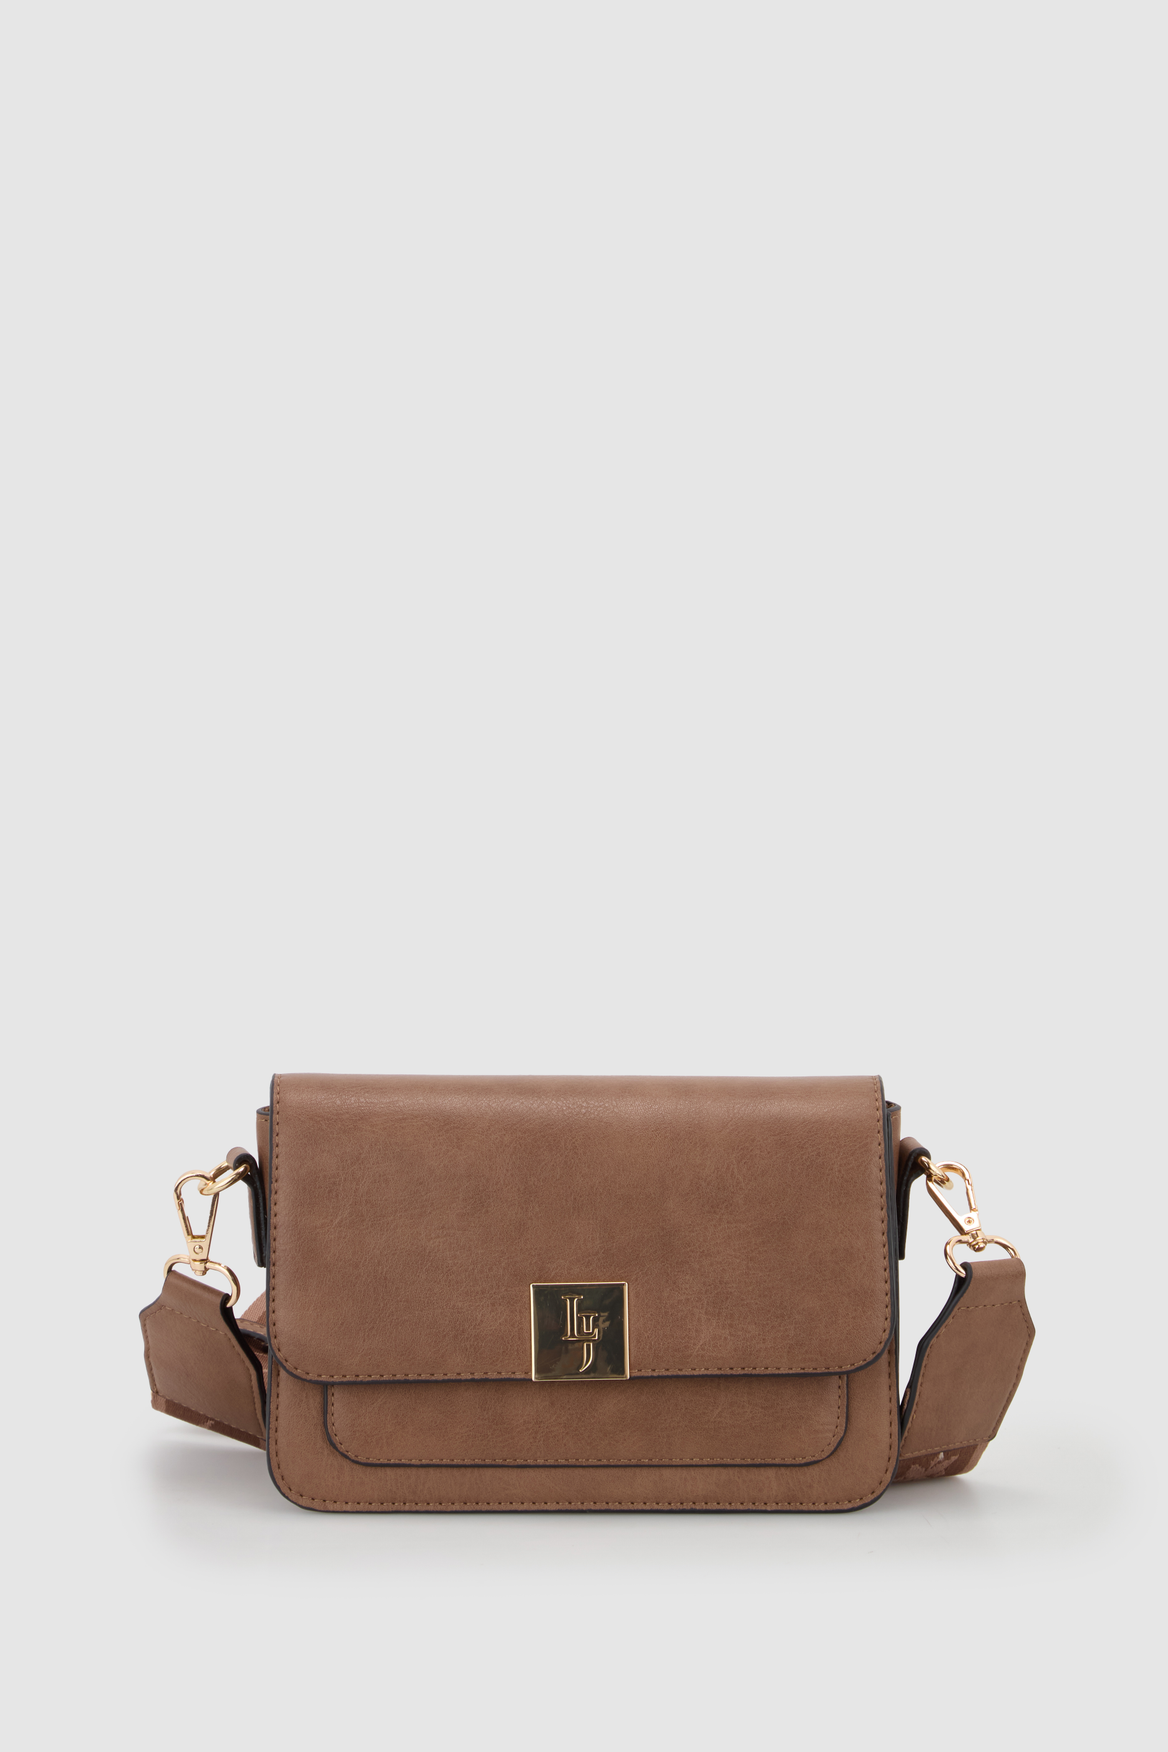 Jones Solid Bags & Handbags for Women | eBay